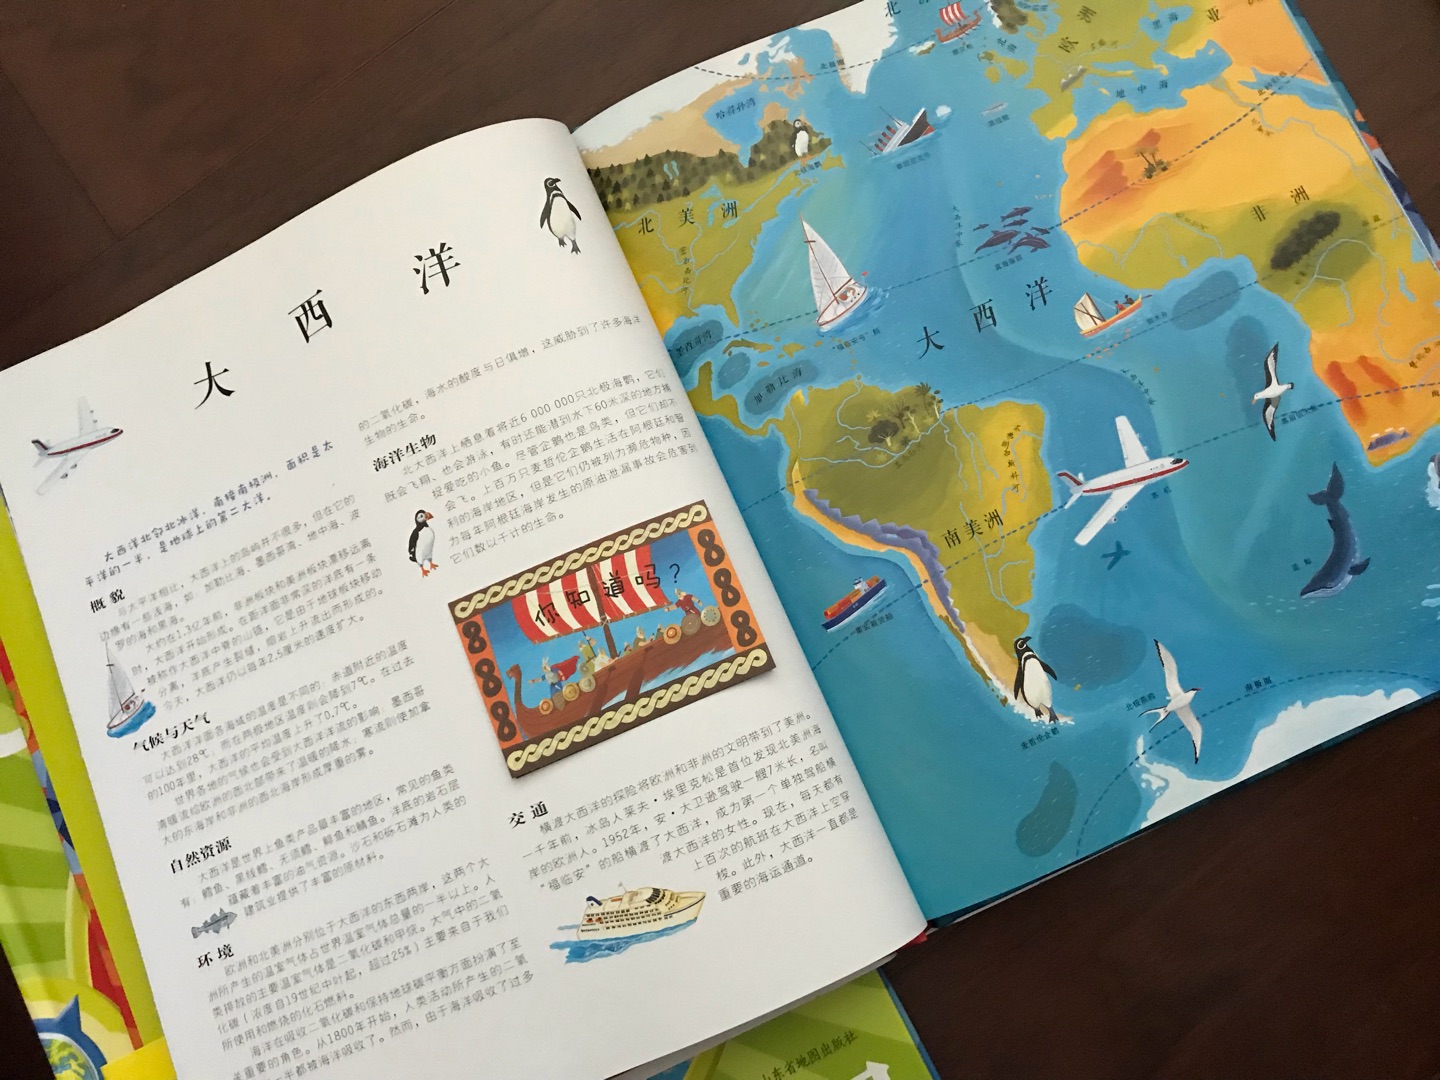 一本很出名的世界的书，介绍了世界各种内容，还有国旗贴纸和一张地图，很不错